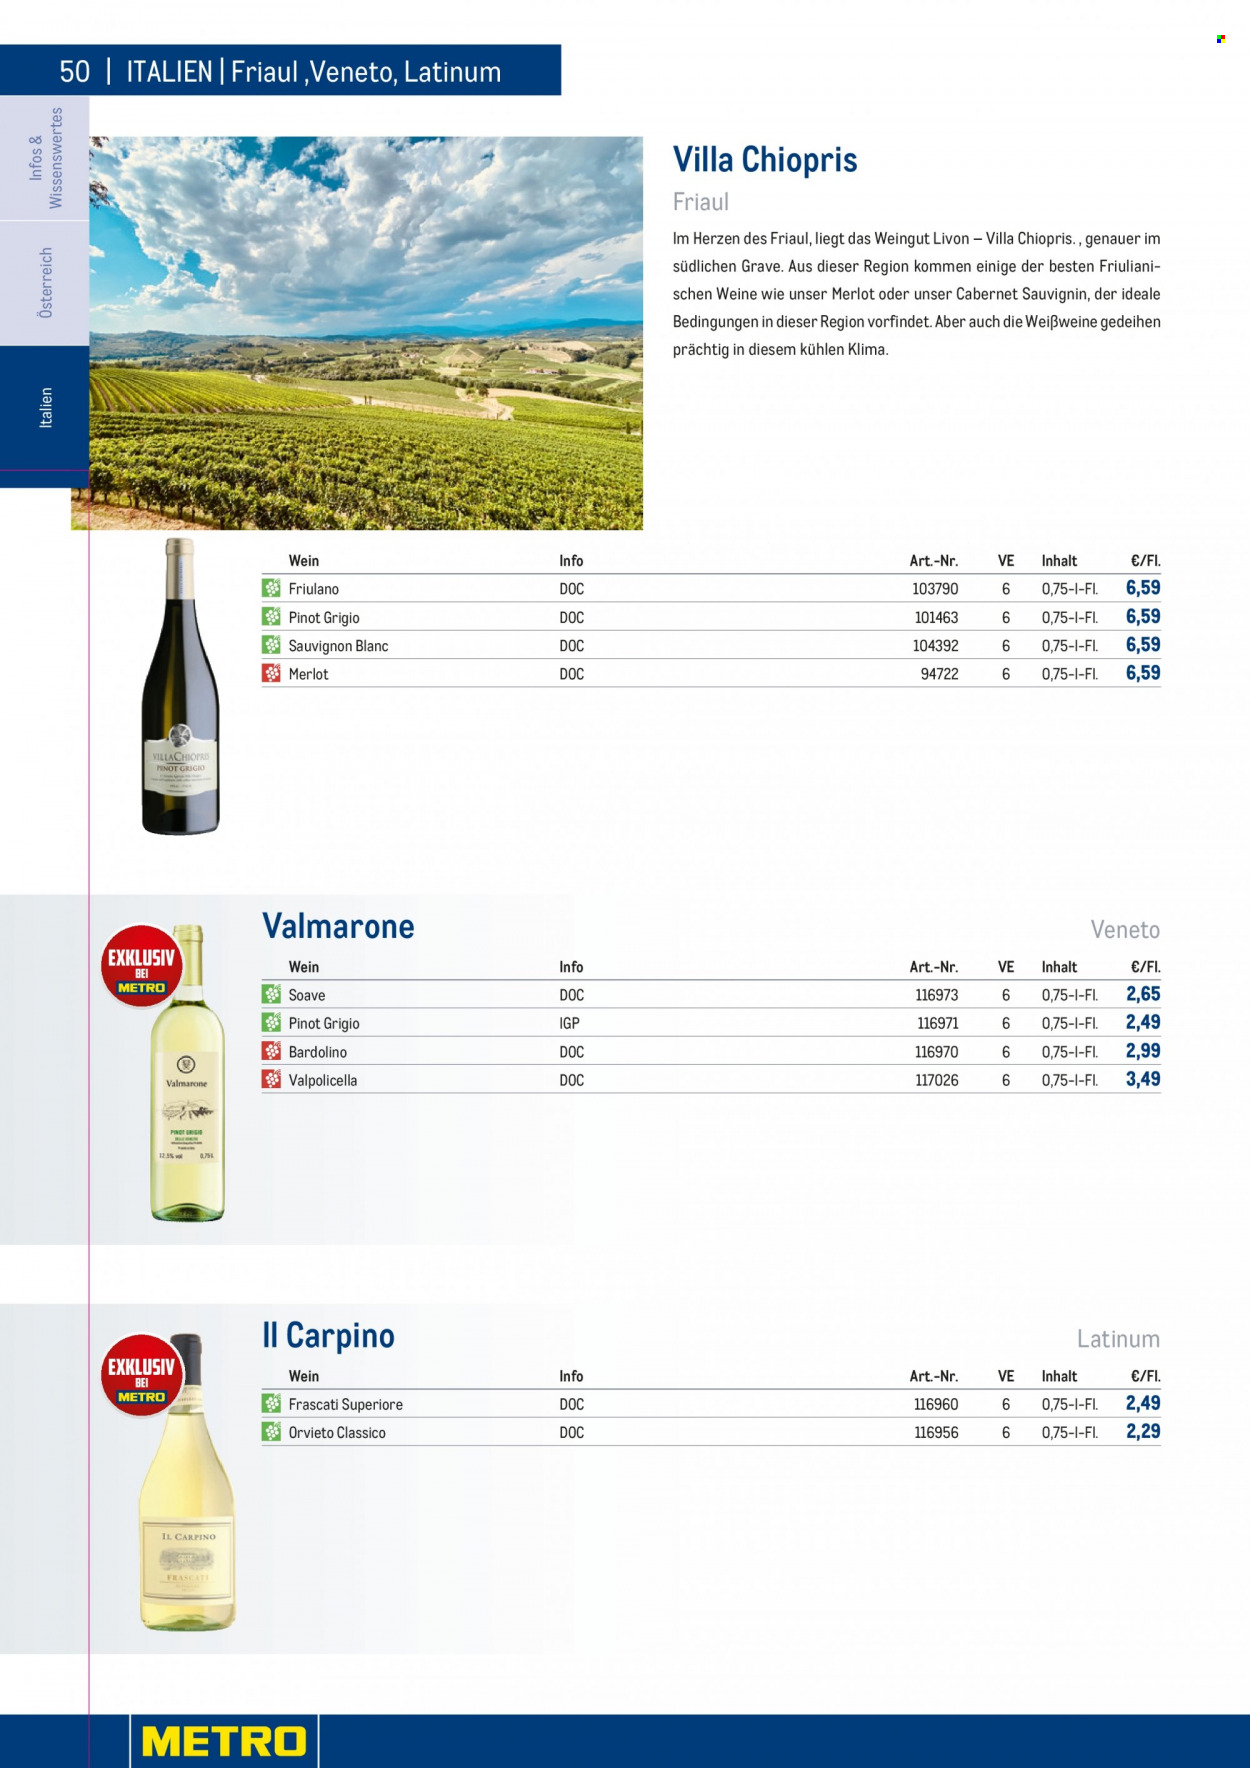 Angebote Metro - 7.9.2022 - 30.4.2023 - Verkaufsprodukte - Wein, Valpolicella, Merlot, Weißwein, Alkohol, Sauvignon Blanc, Grauburgunder. Seite 50.